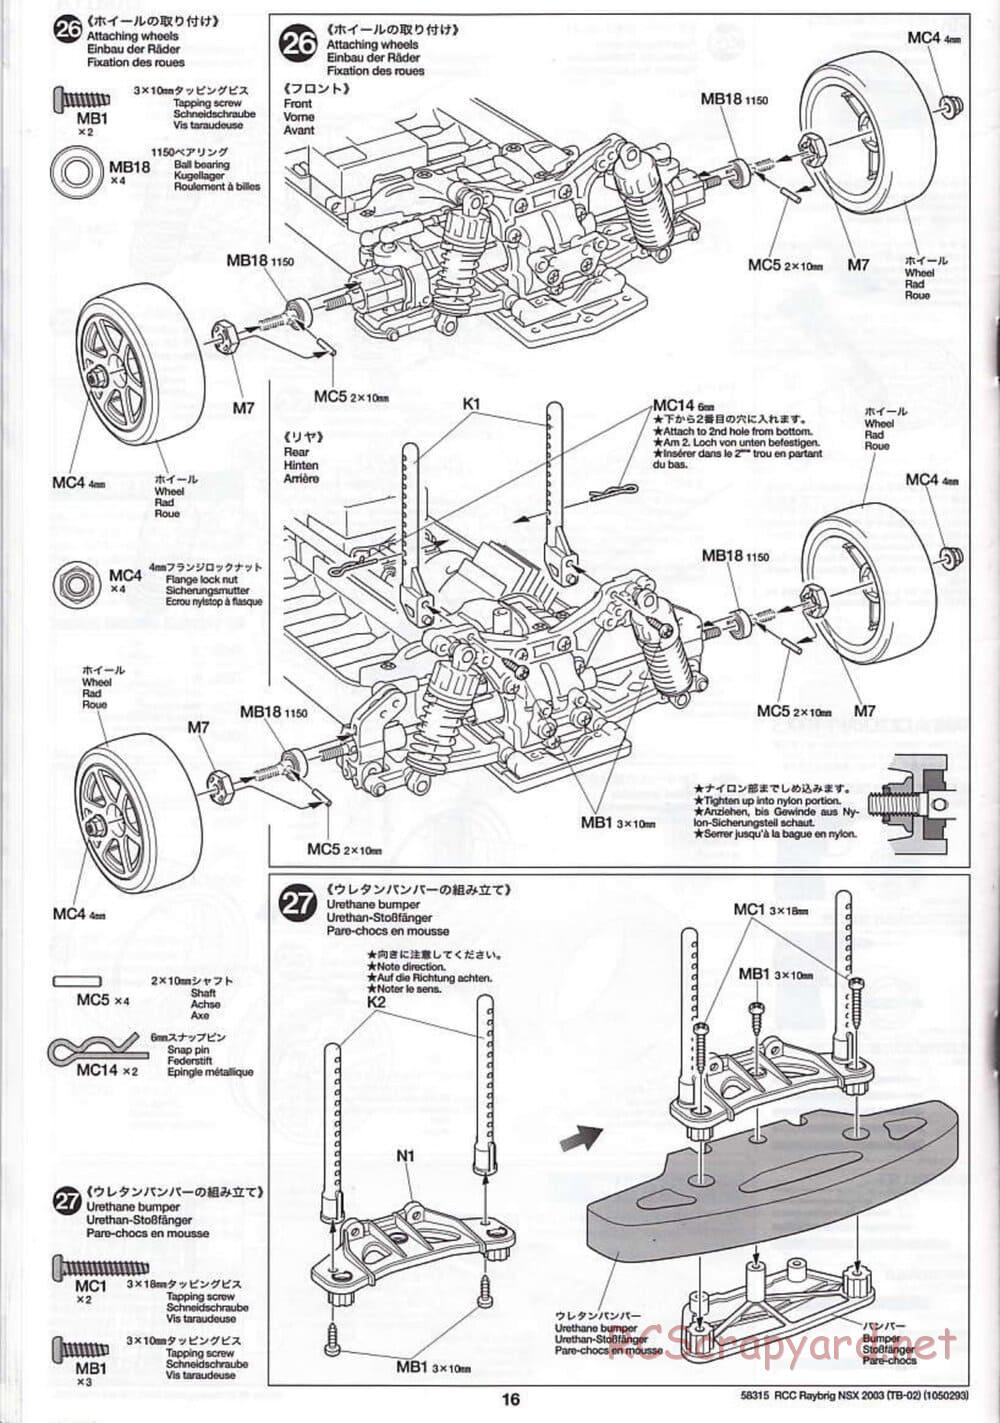 Tamiya - Raybrig NSX 2003 - TB-02 Chassis - Manual - Page 16